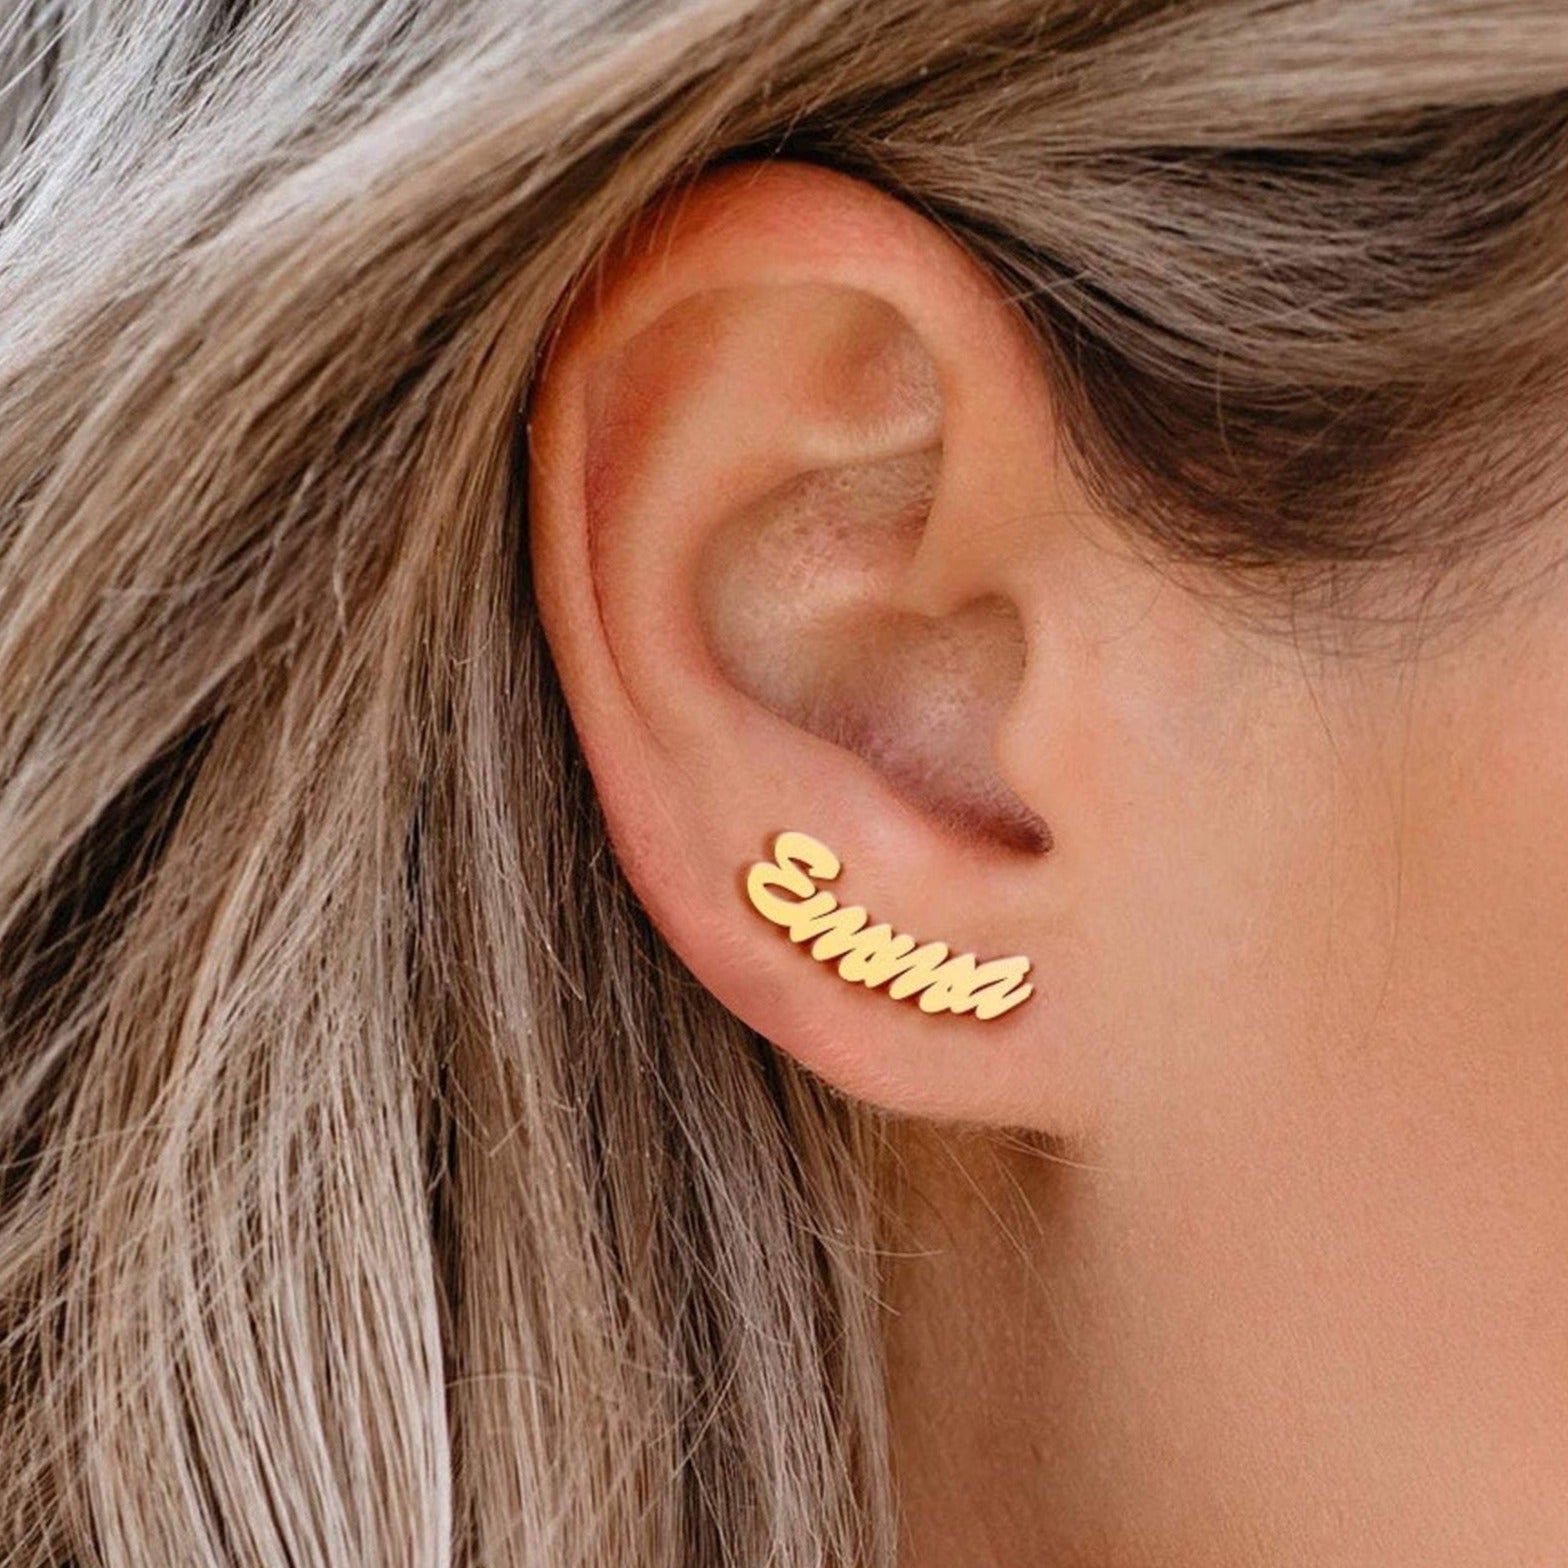 personalised name studs earrings